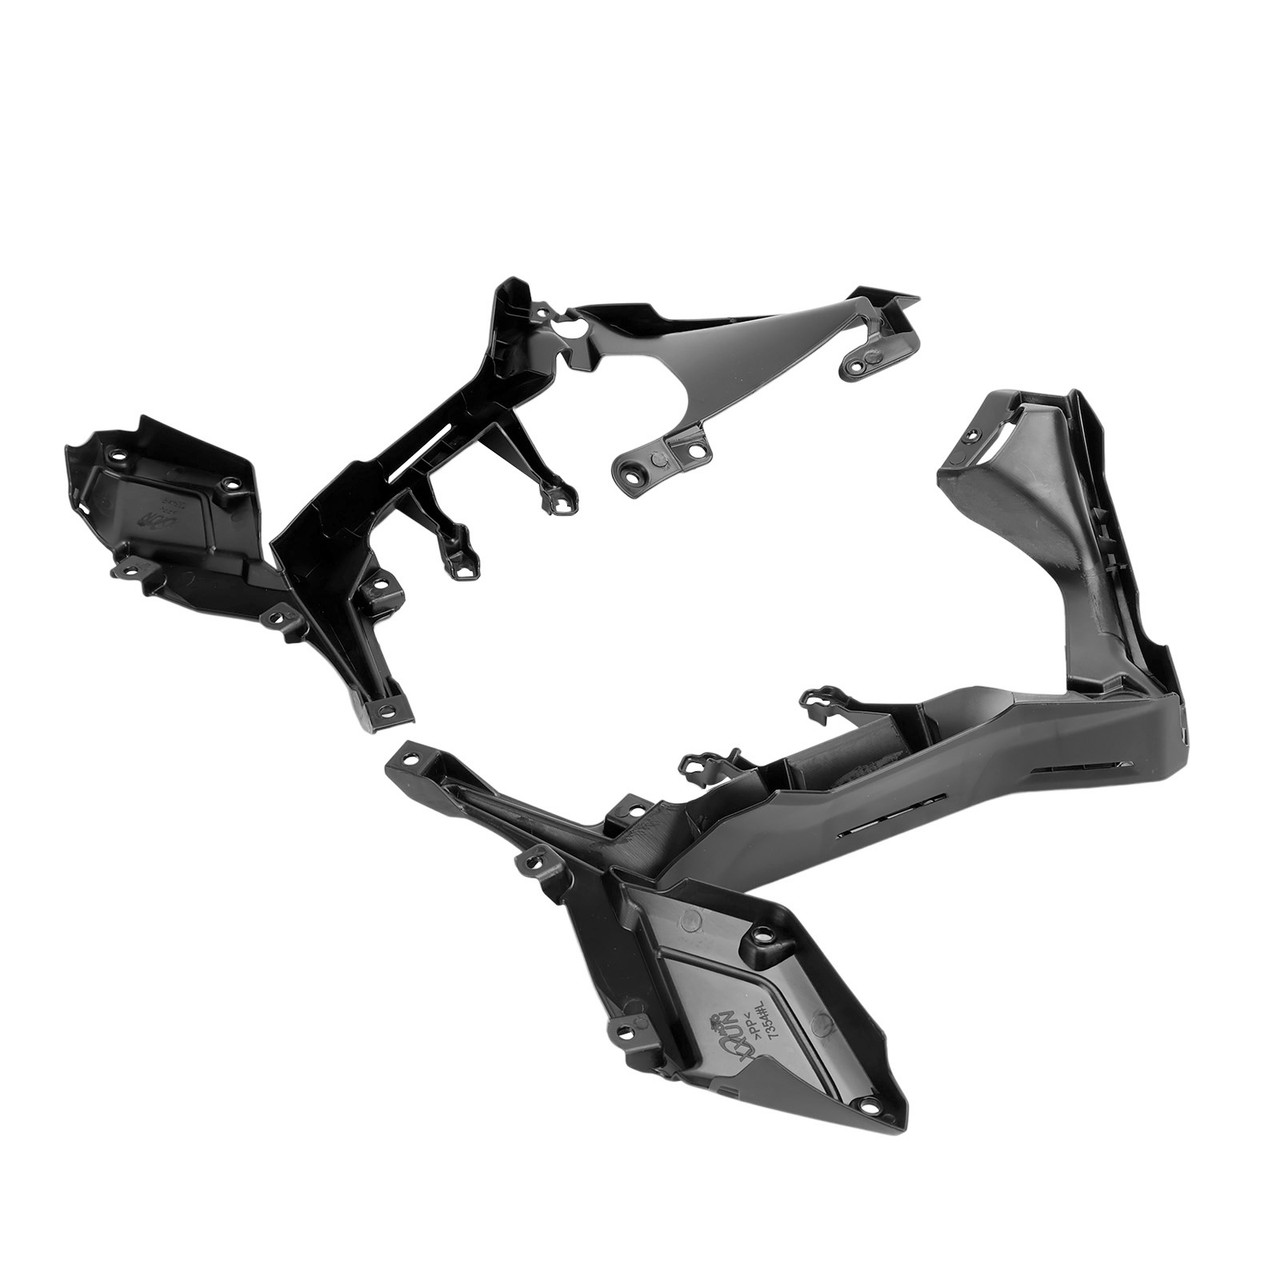 Unpainted side frame Cover Panel Fairing Cowl for Honda CBR650R 2019-2023